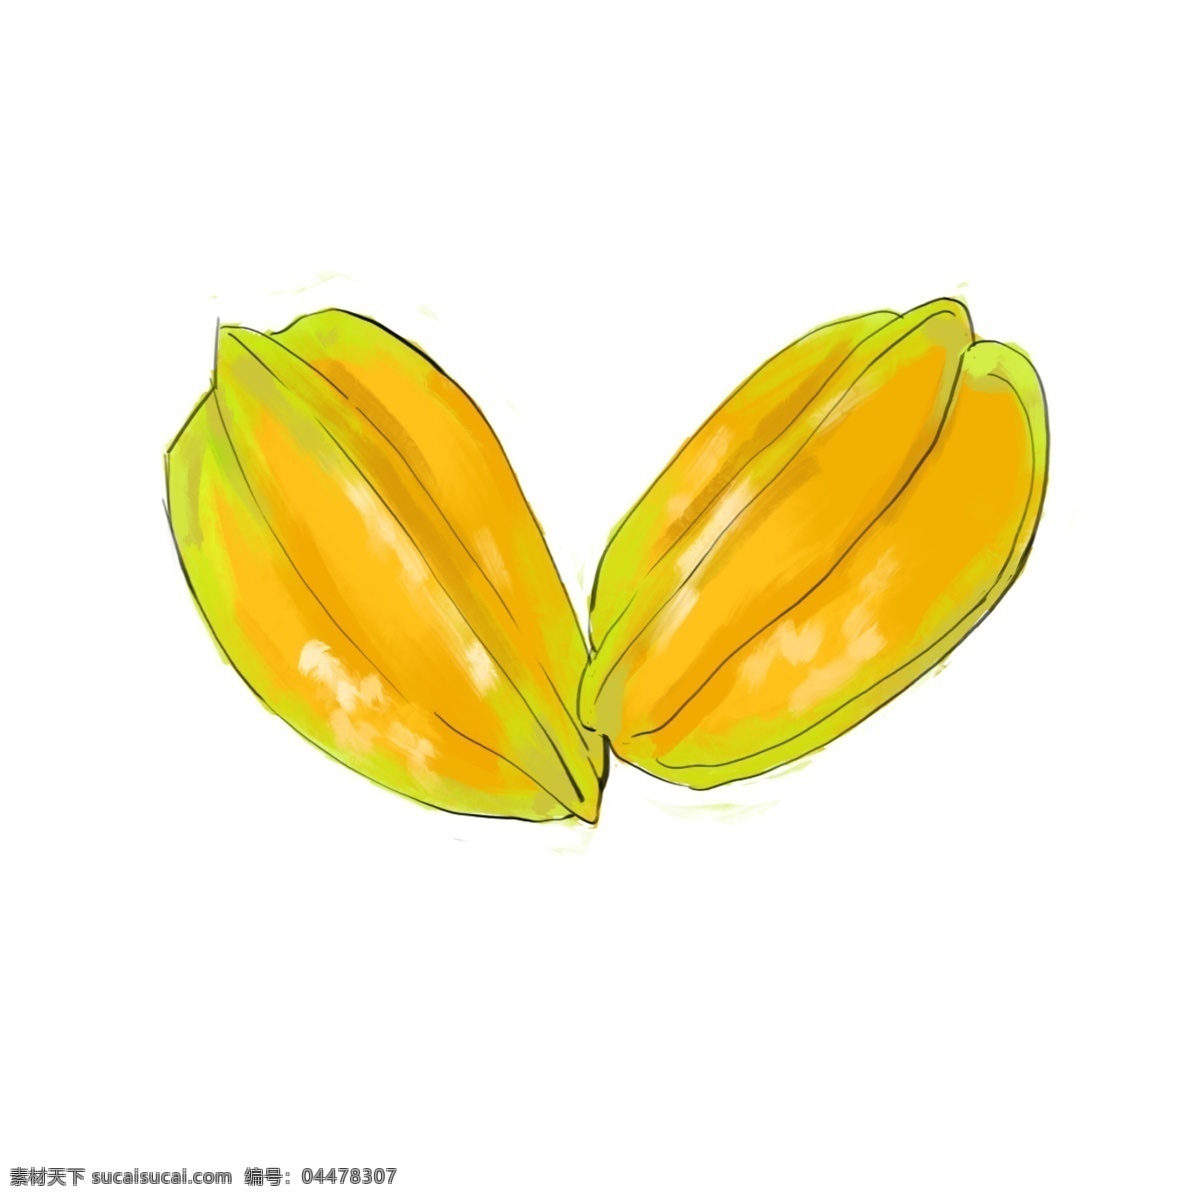 两个 黄桃 水果 插图 黄色